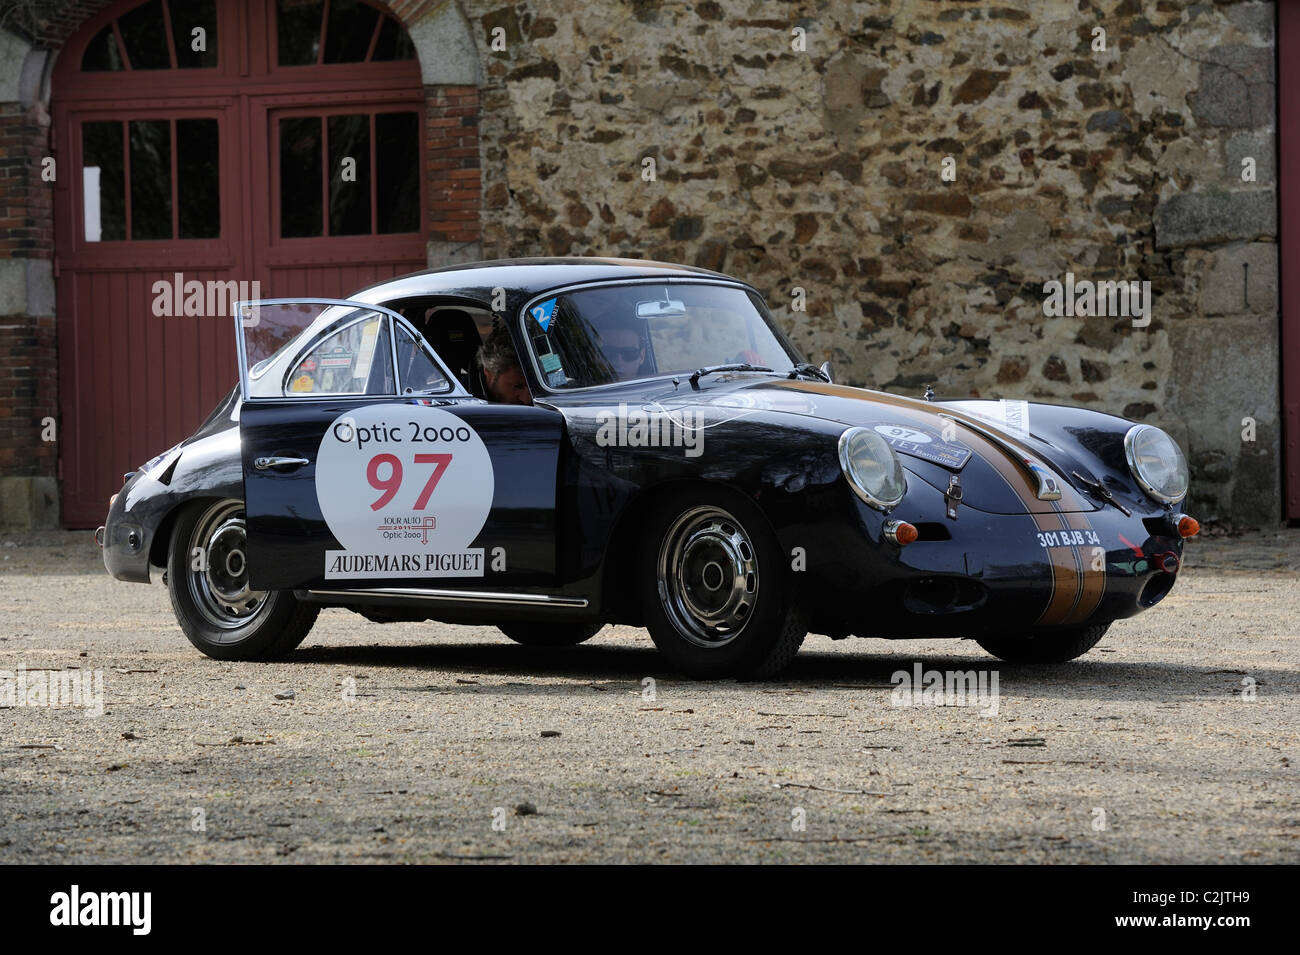 Stock photo d'un 1963 Porsche 356 dans le tour auto optic 2000 en 2011. Banque D'Images